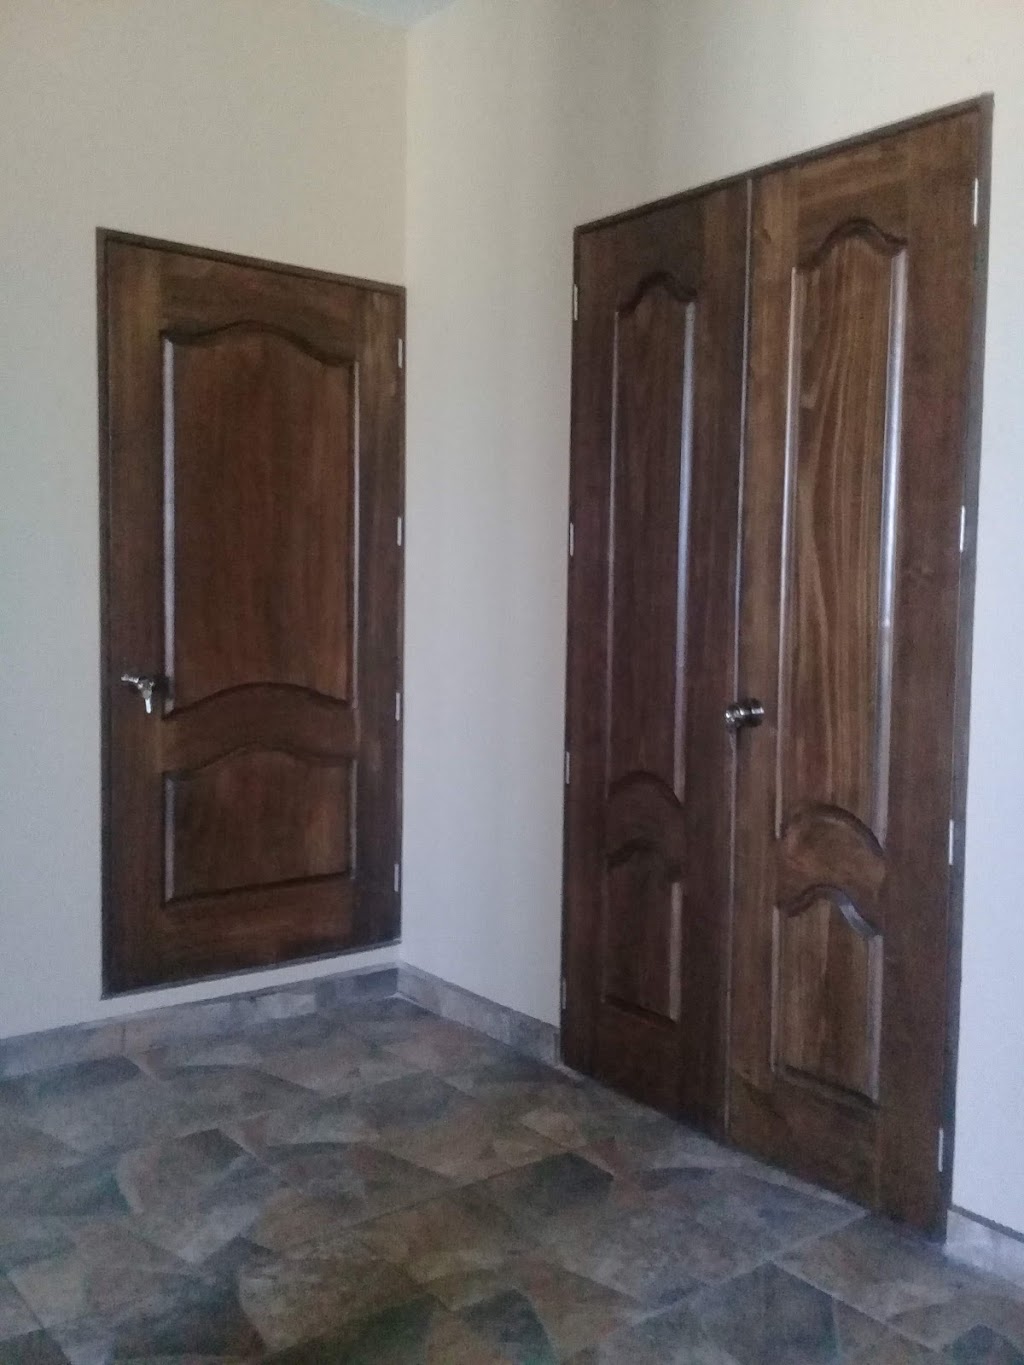 Muebles Rusticos y Coloniales de Taxco Guerrero | 22710 Rosarito, Baja California, Mexico | Phone: 762 625 3526